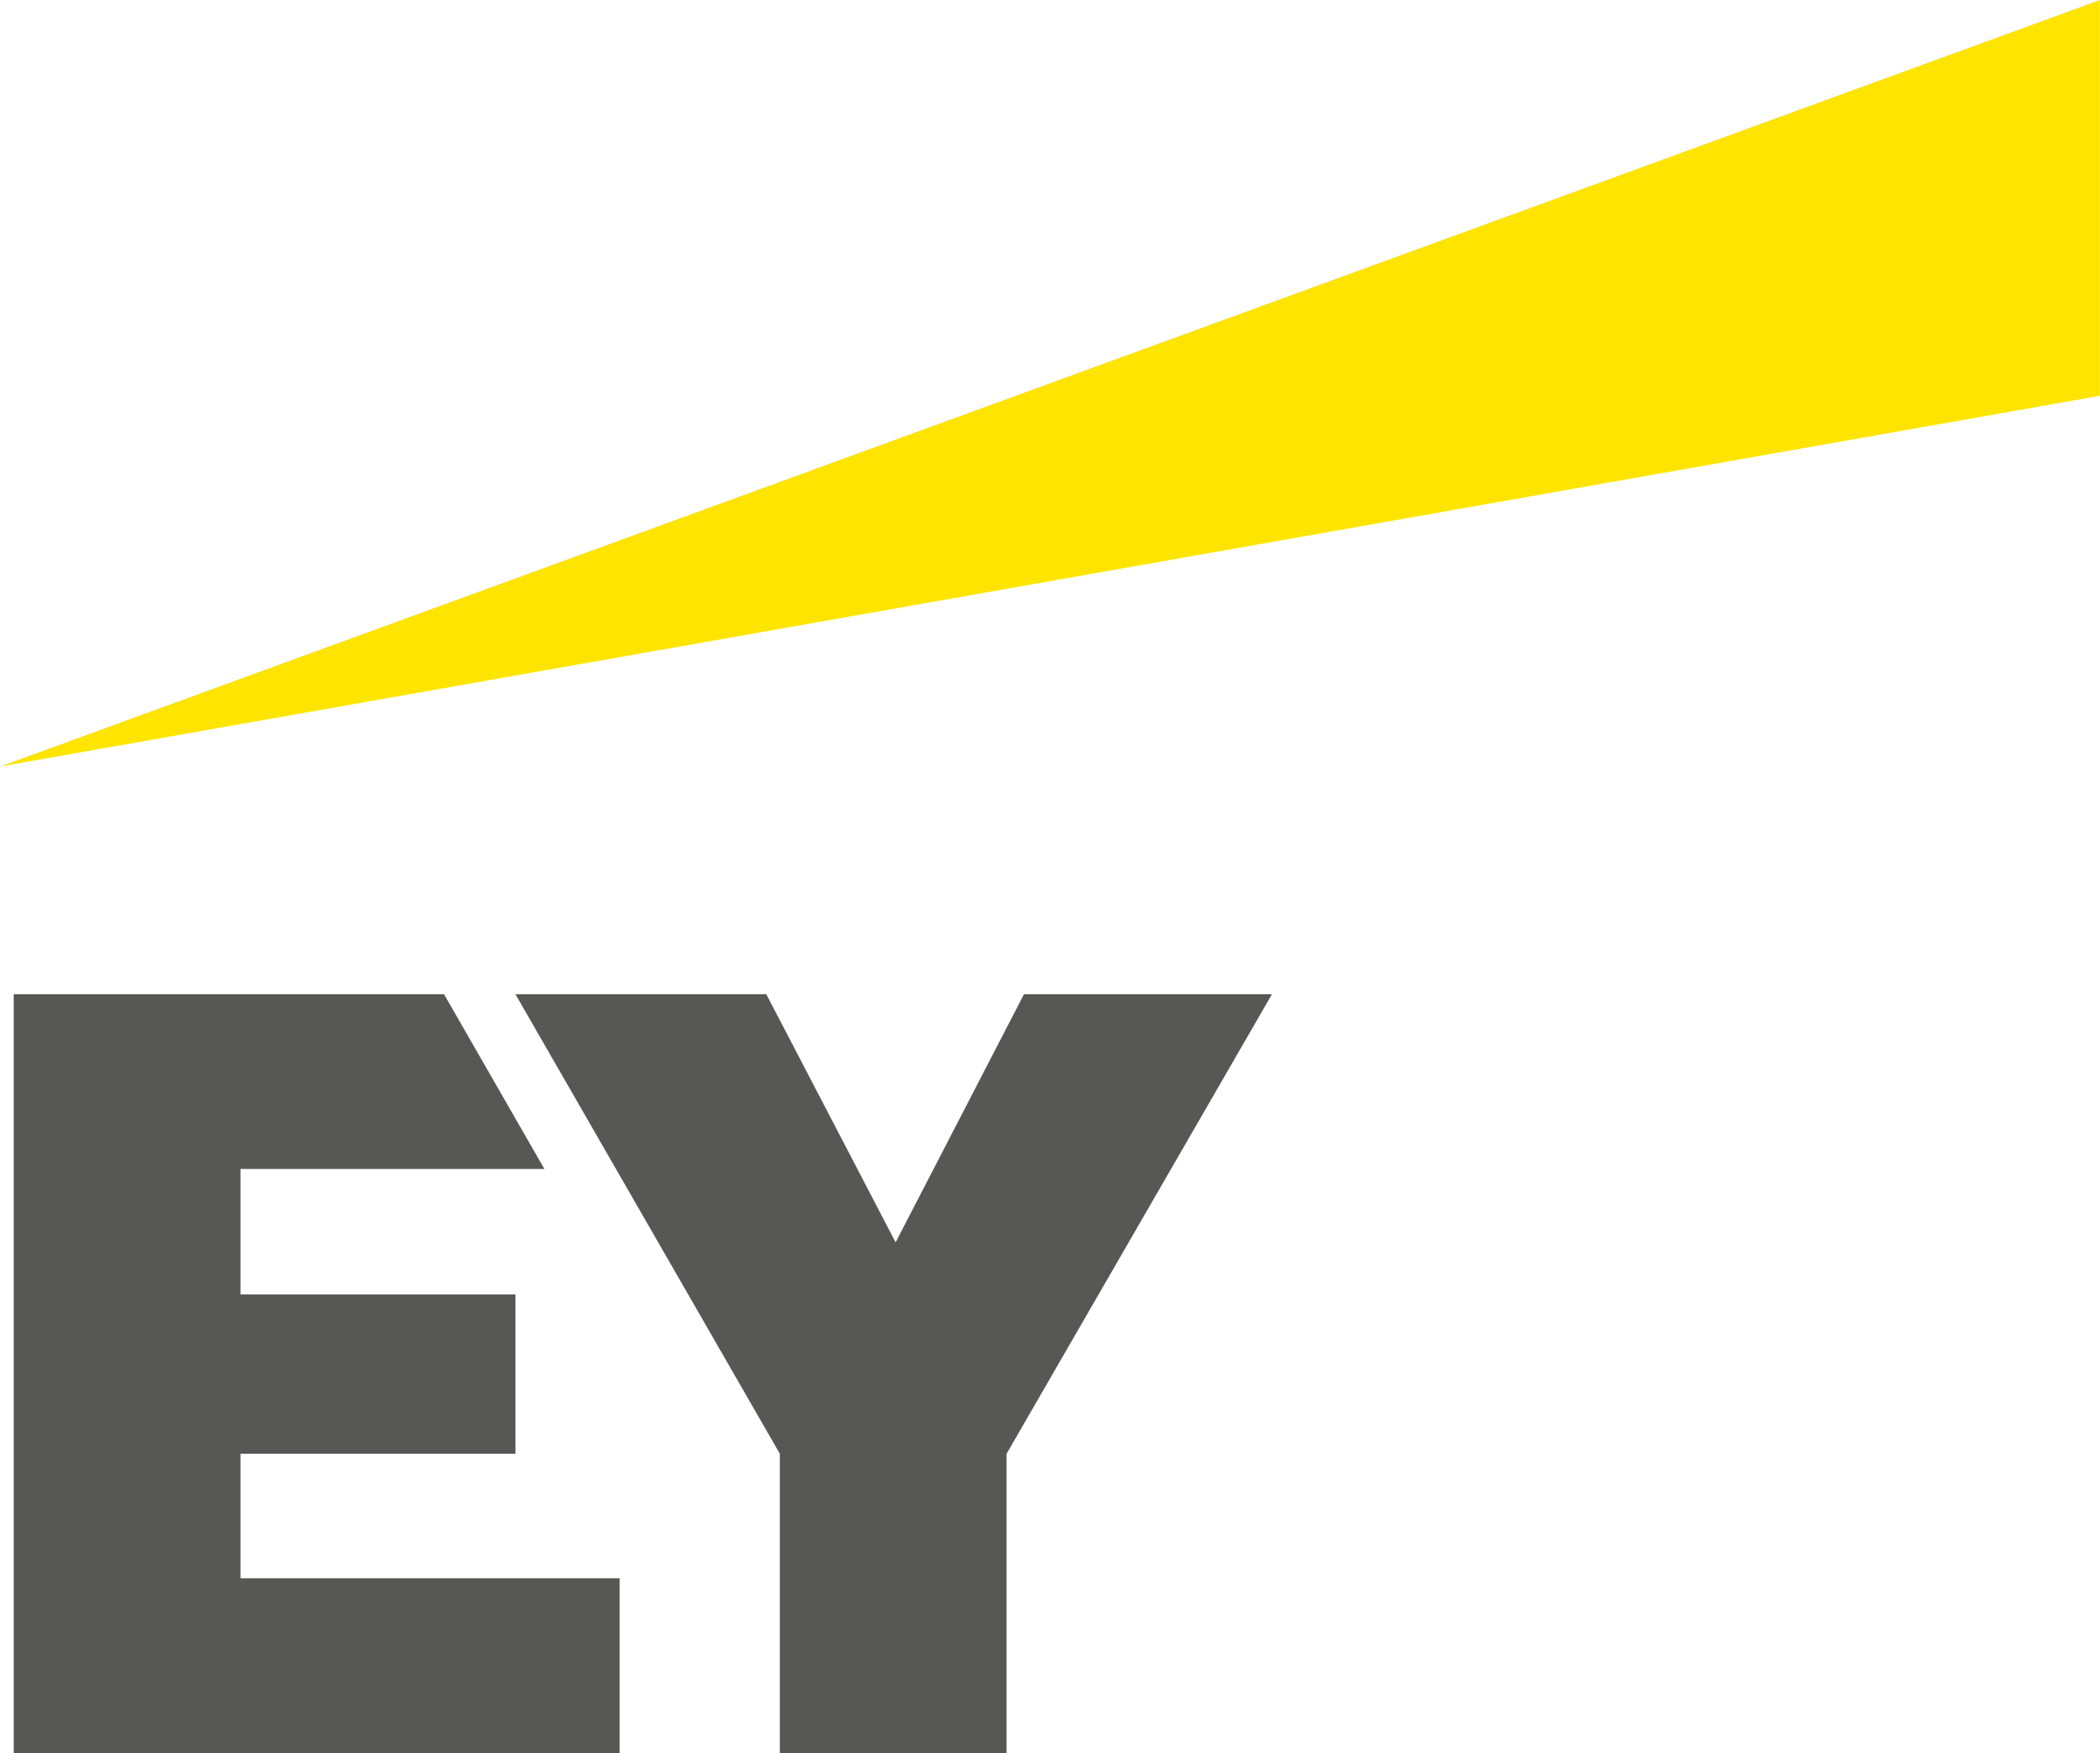 Ey Logo PNG File